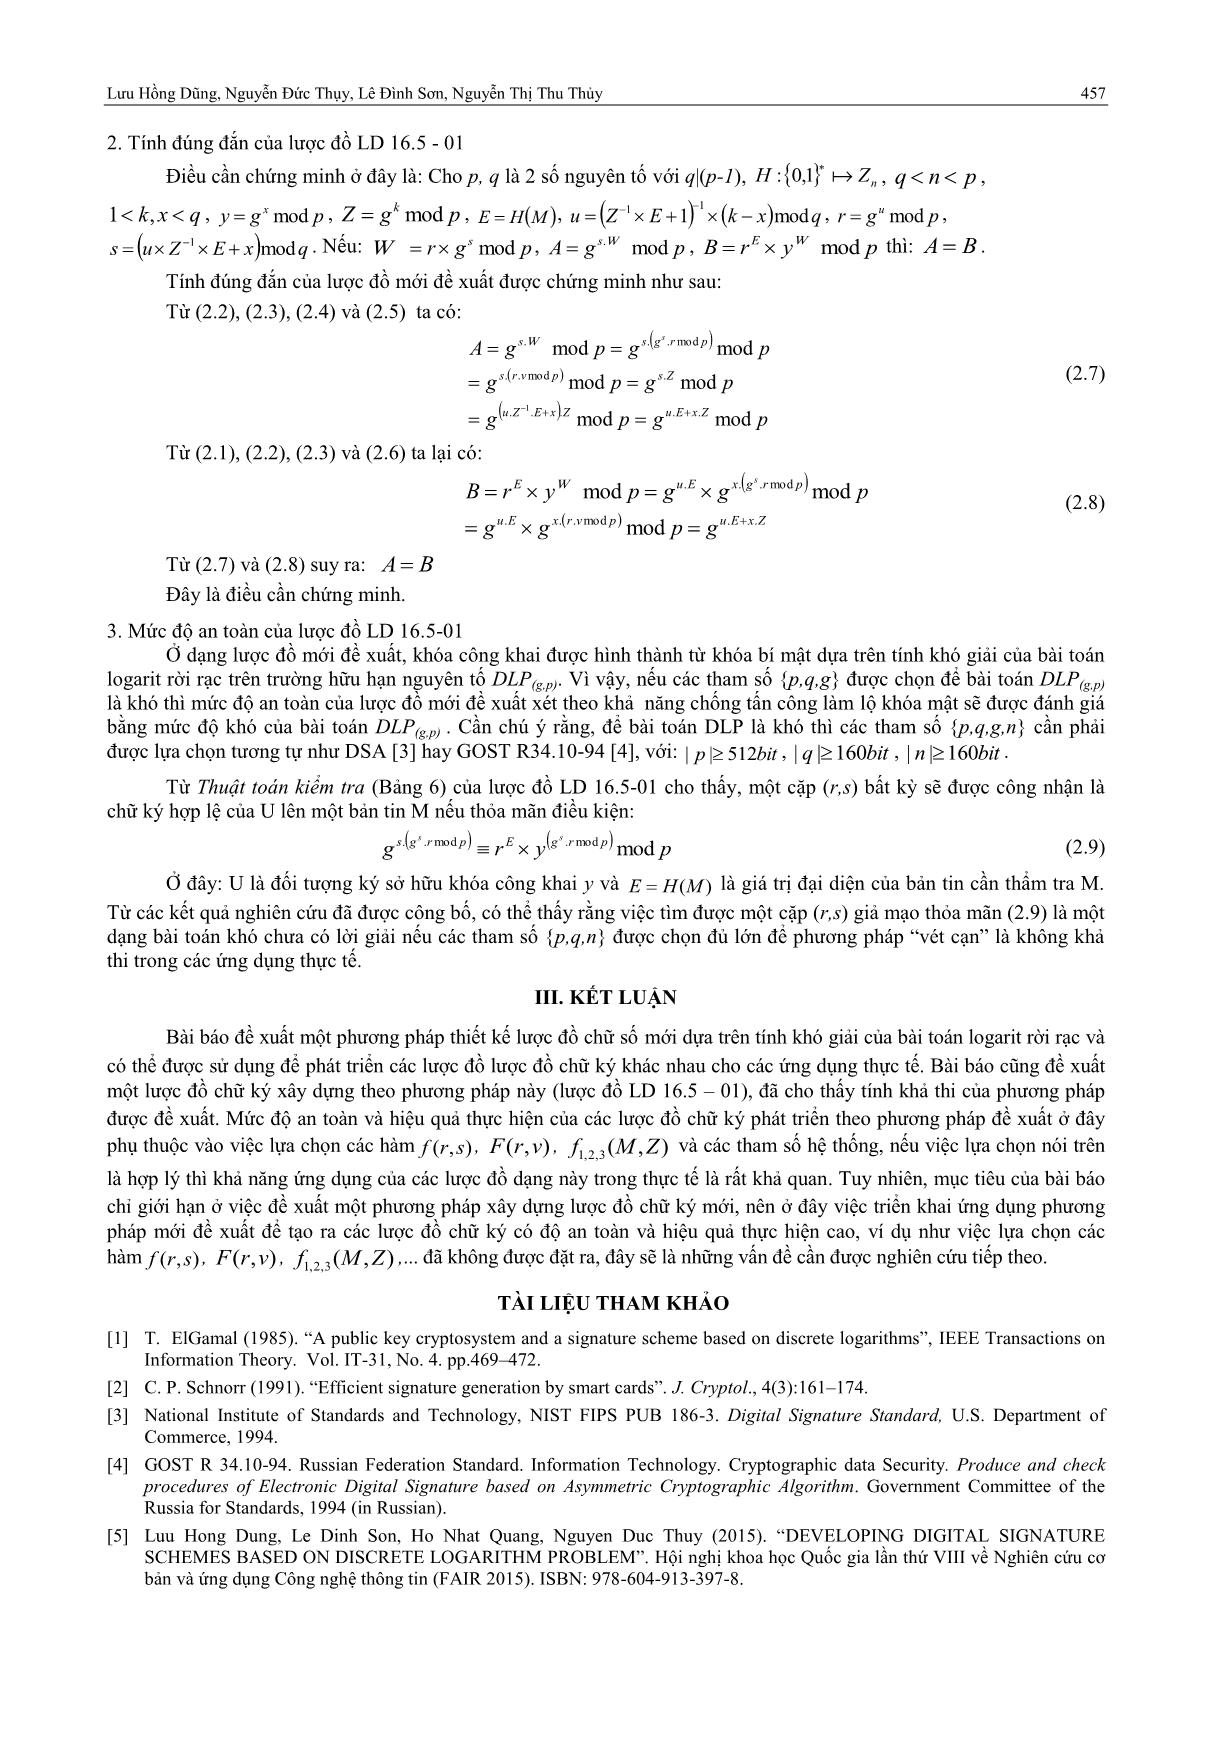 Một phương pháp xây dựng lược đồ chữ ký số dựa trên bài toán logarit rời rạc trang 5